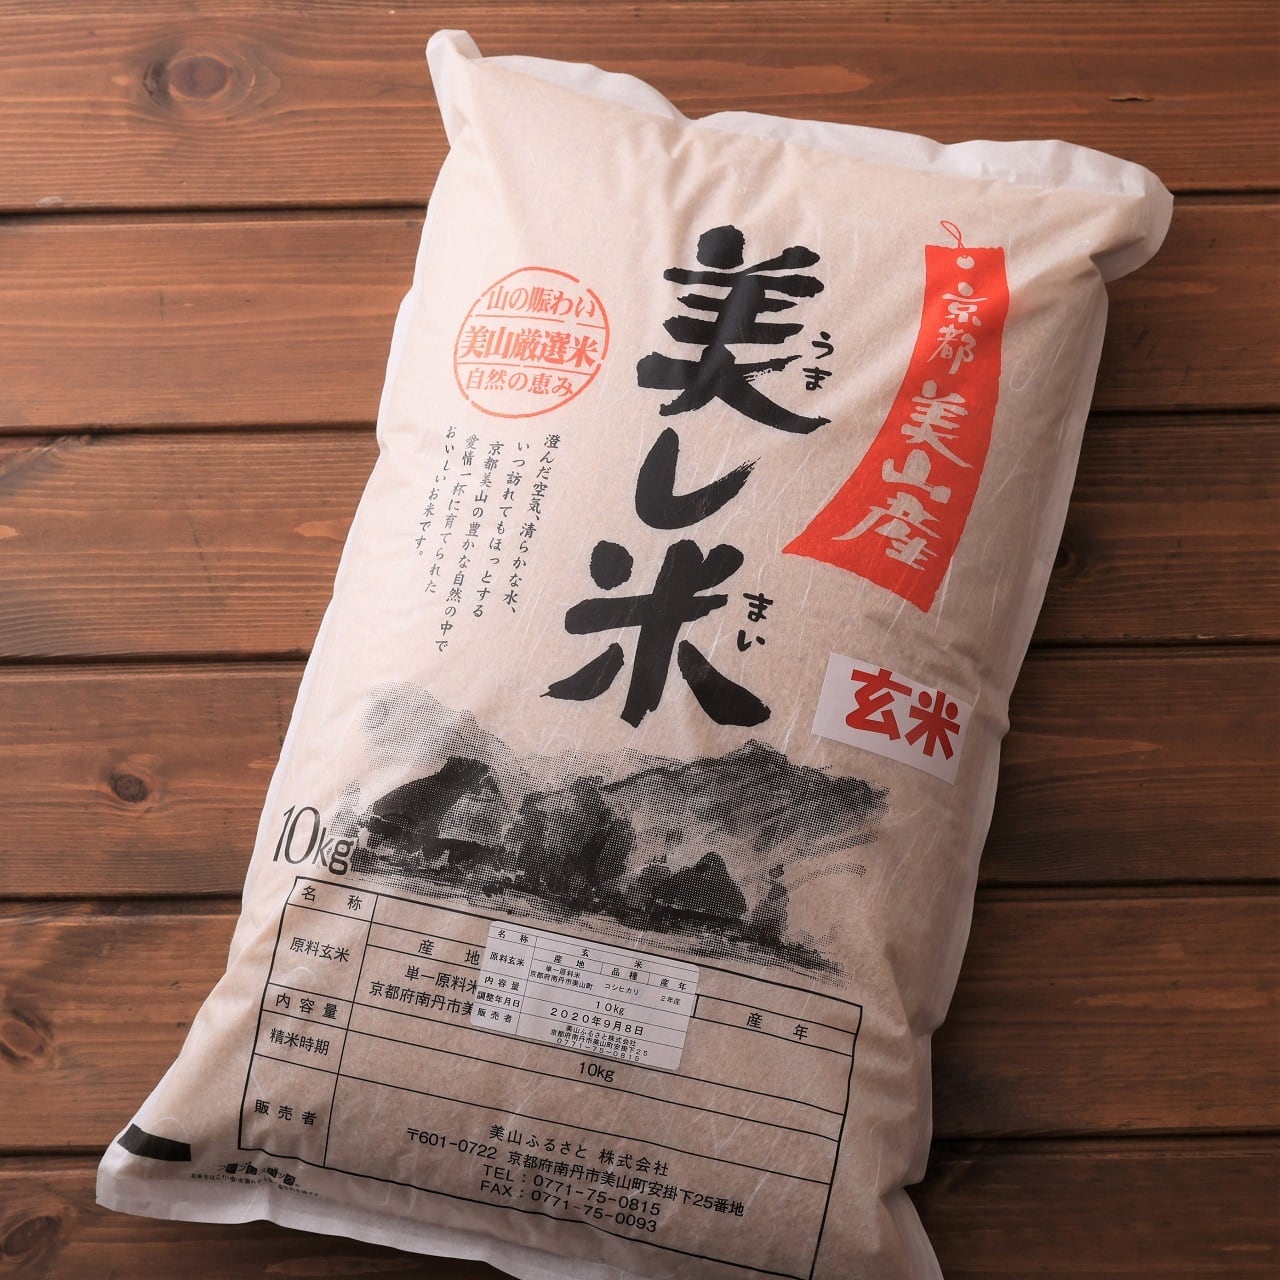 新米コシヒカリ10キロ玄米